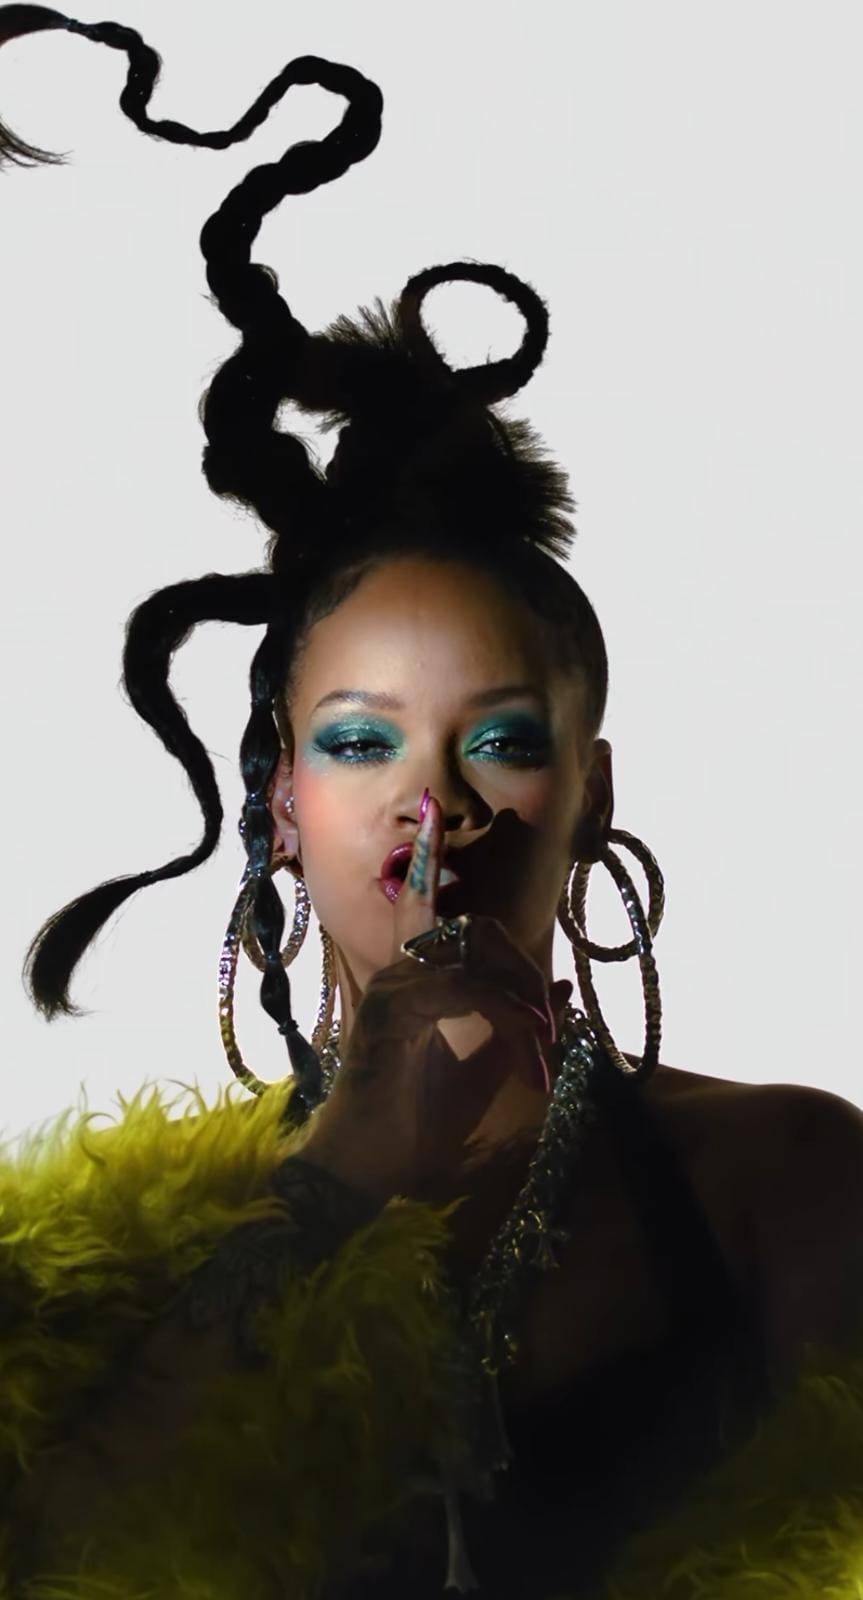 Rihanna prvi put nominirana za Oscara, a među konkurencijom je još jedna glazbena zvijezda